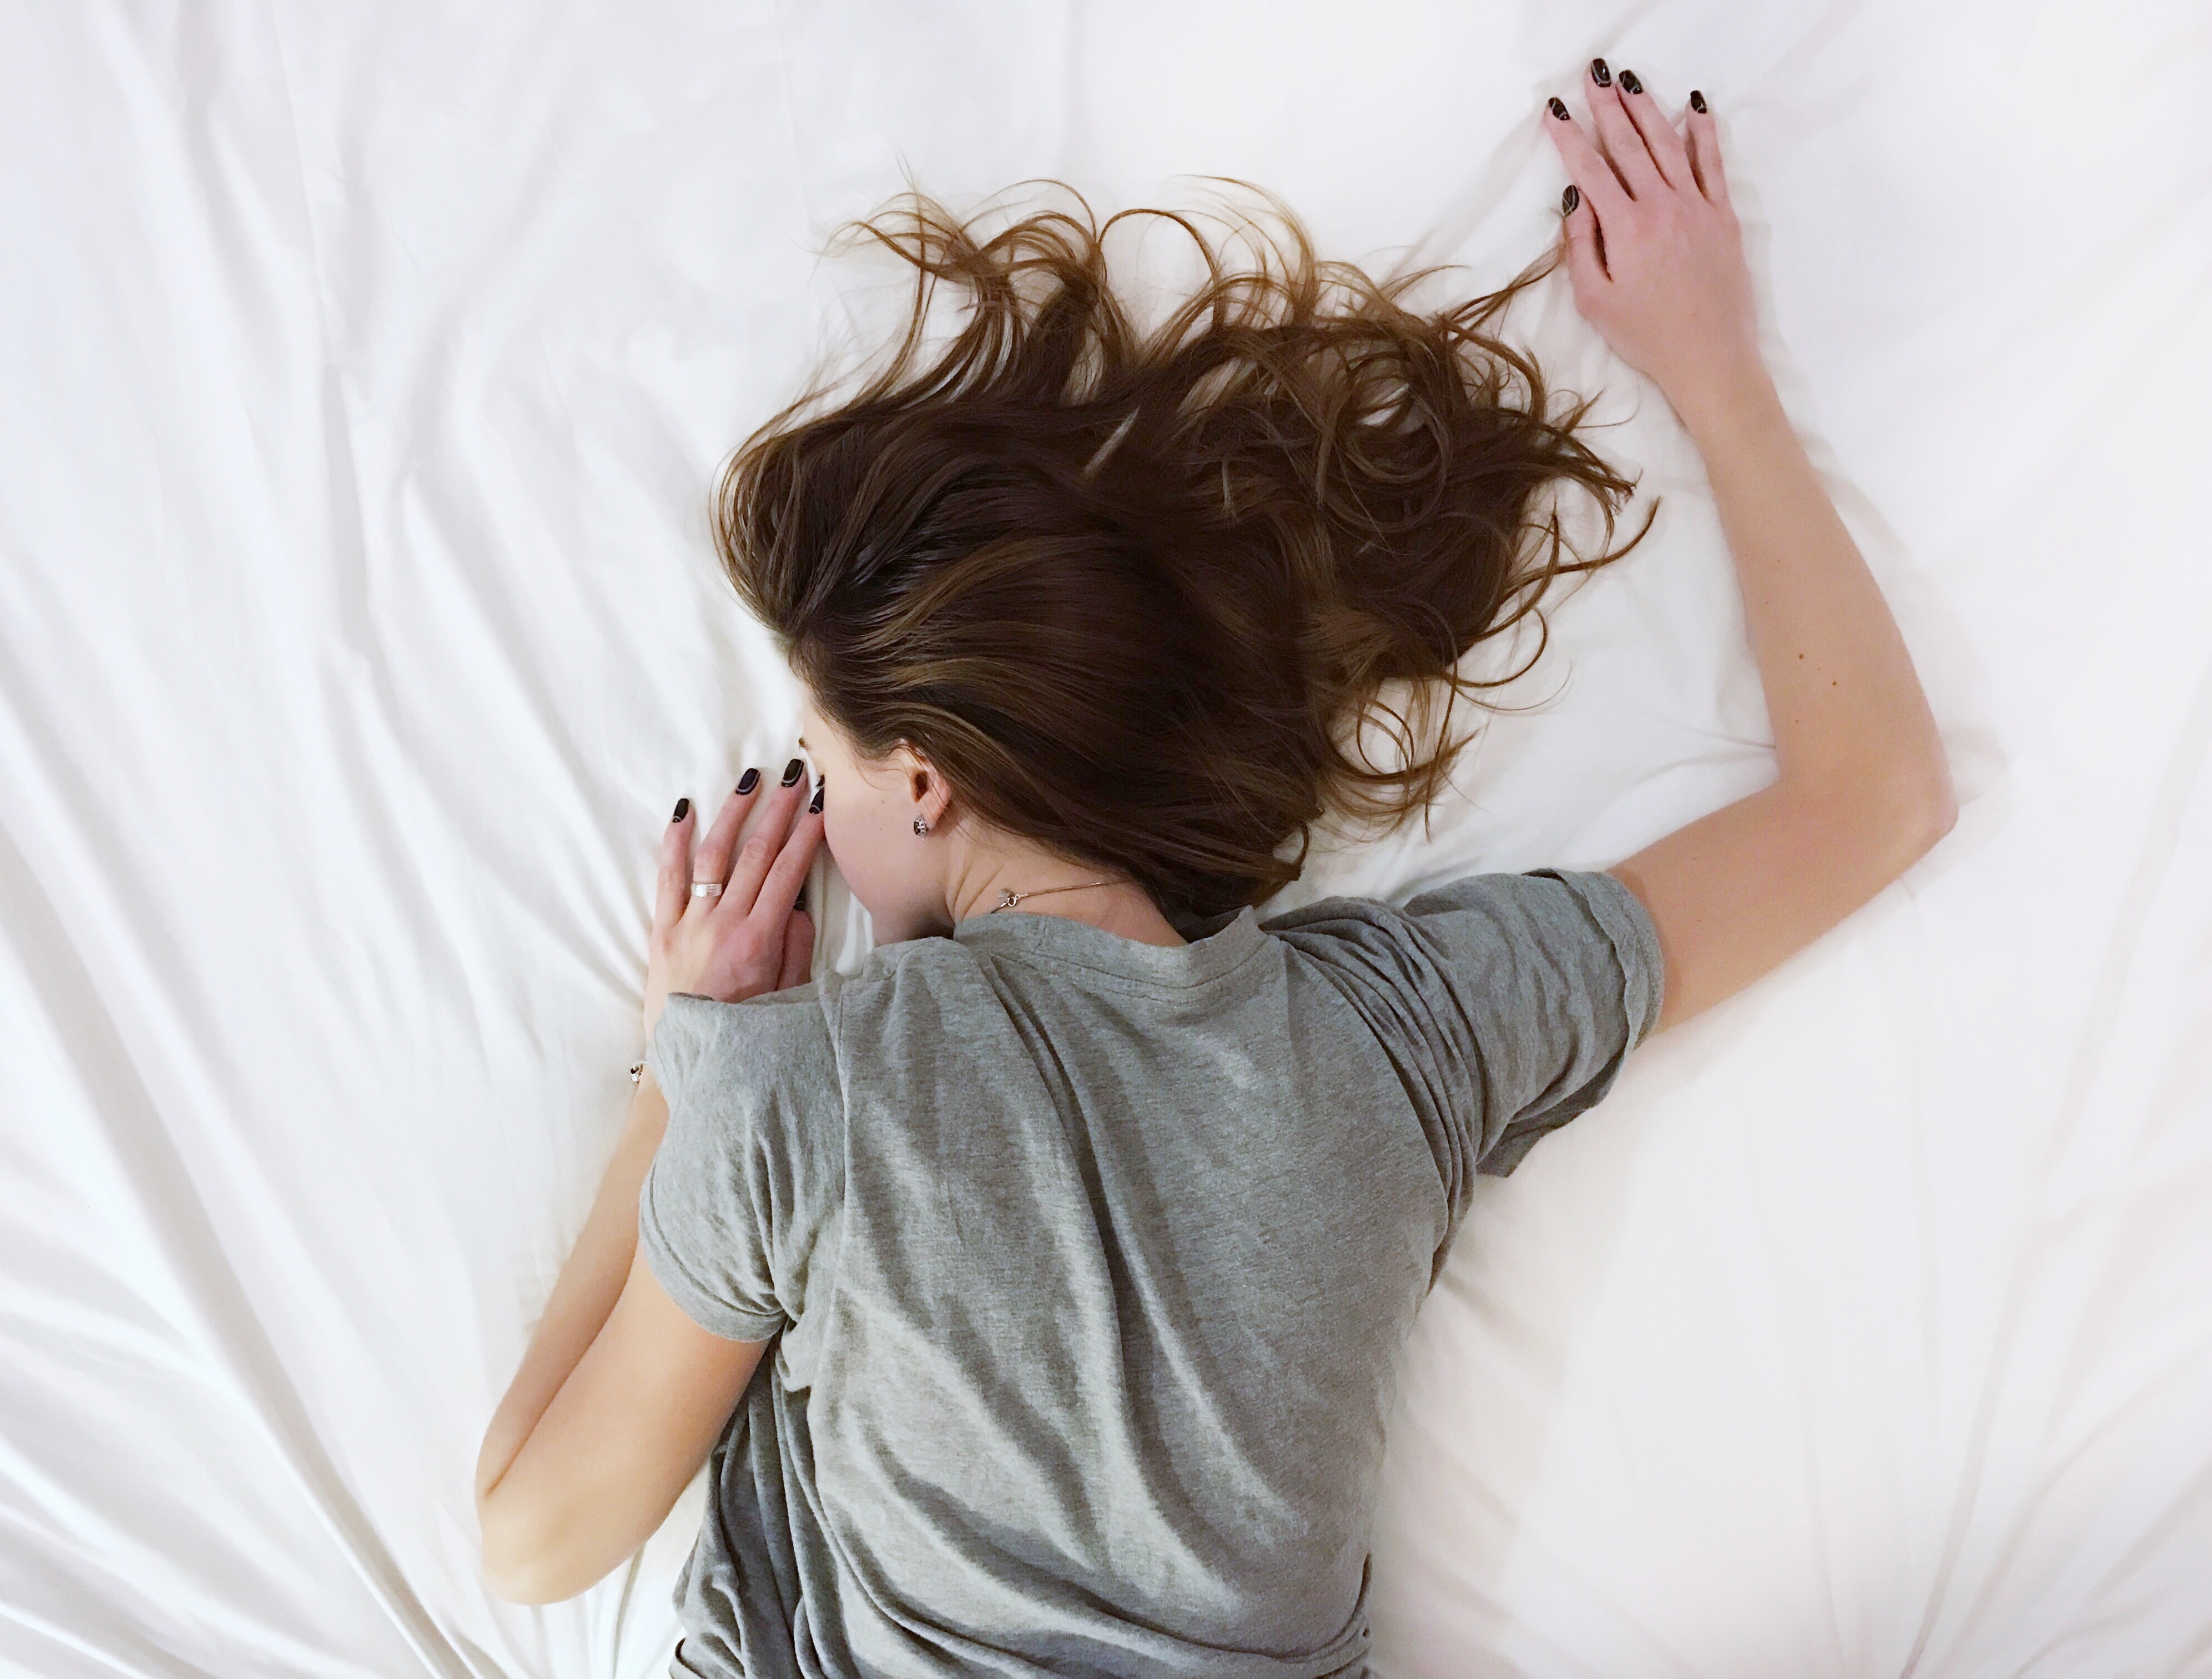 女性が慢性疲労が続くと日常生活も困難になる自己免疫疾患のリスク